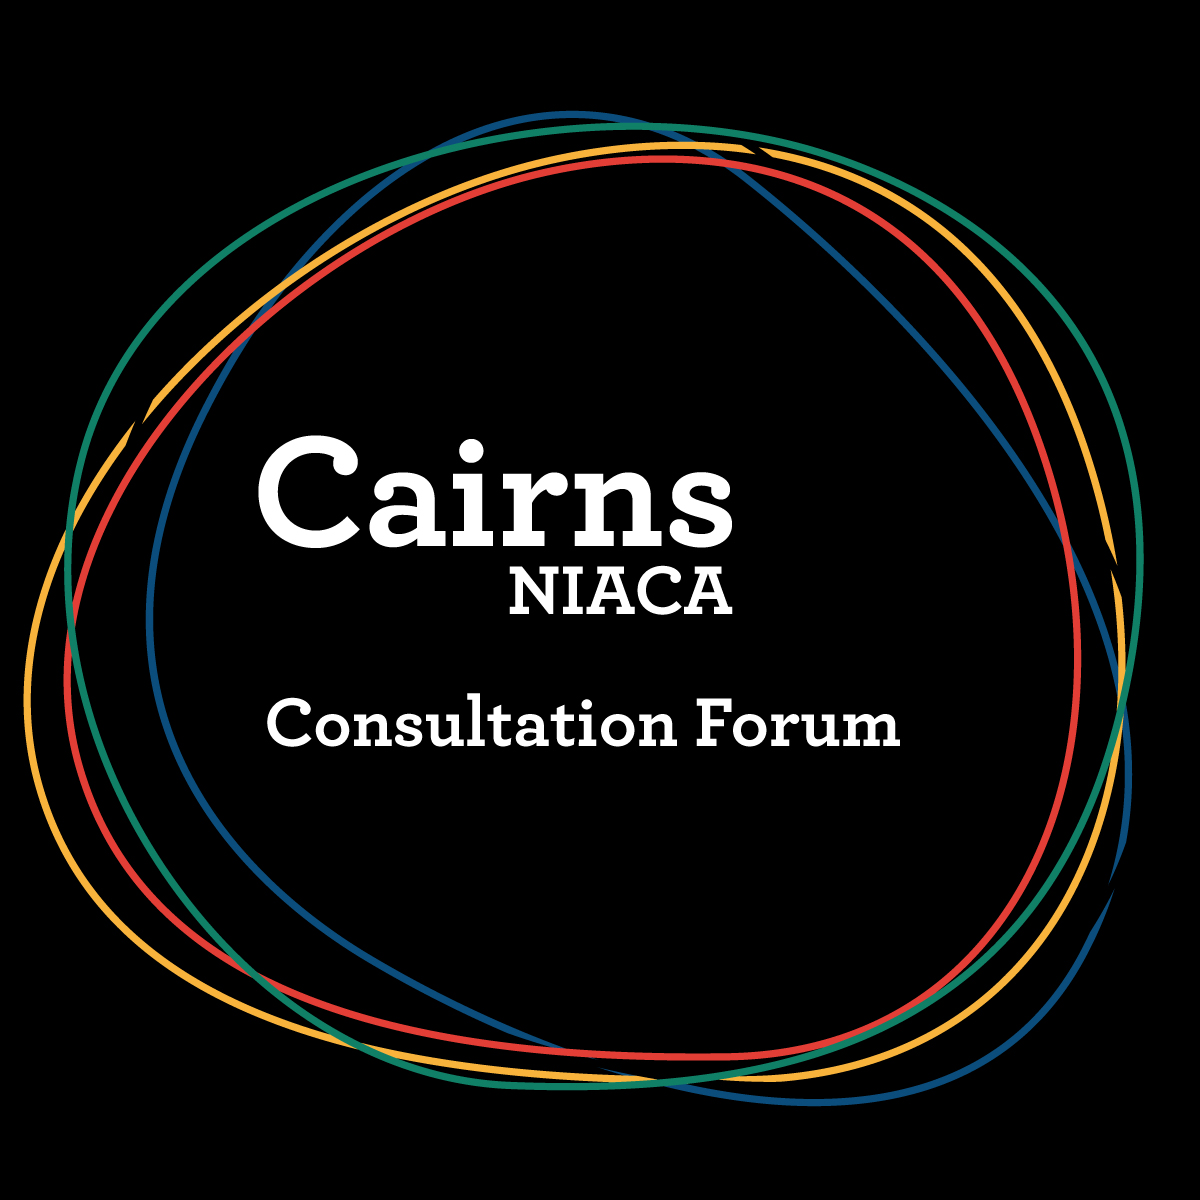 Cairns NIACA Consultation Forum